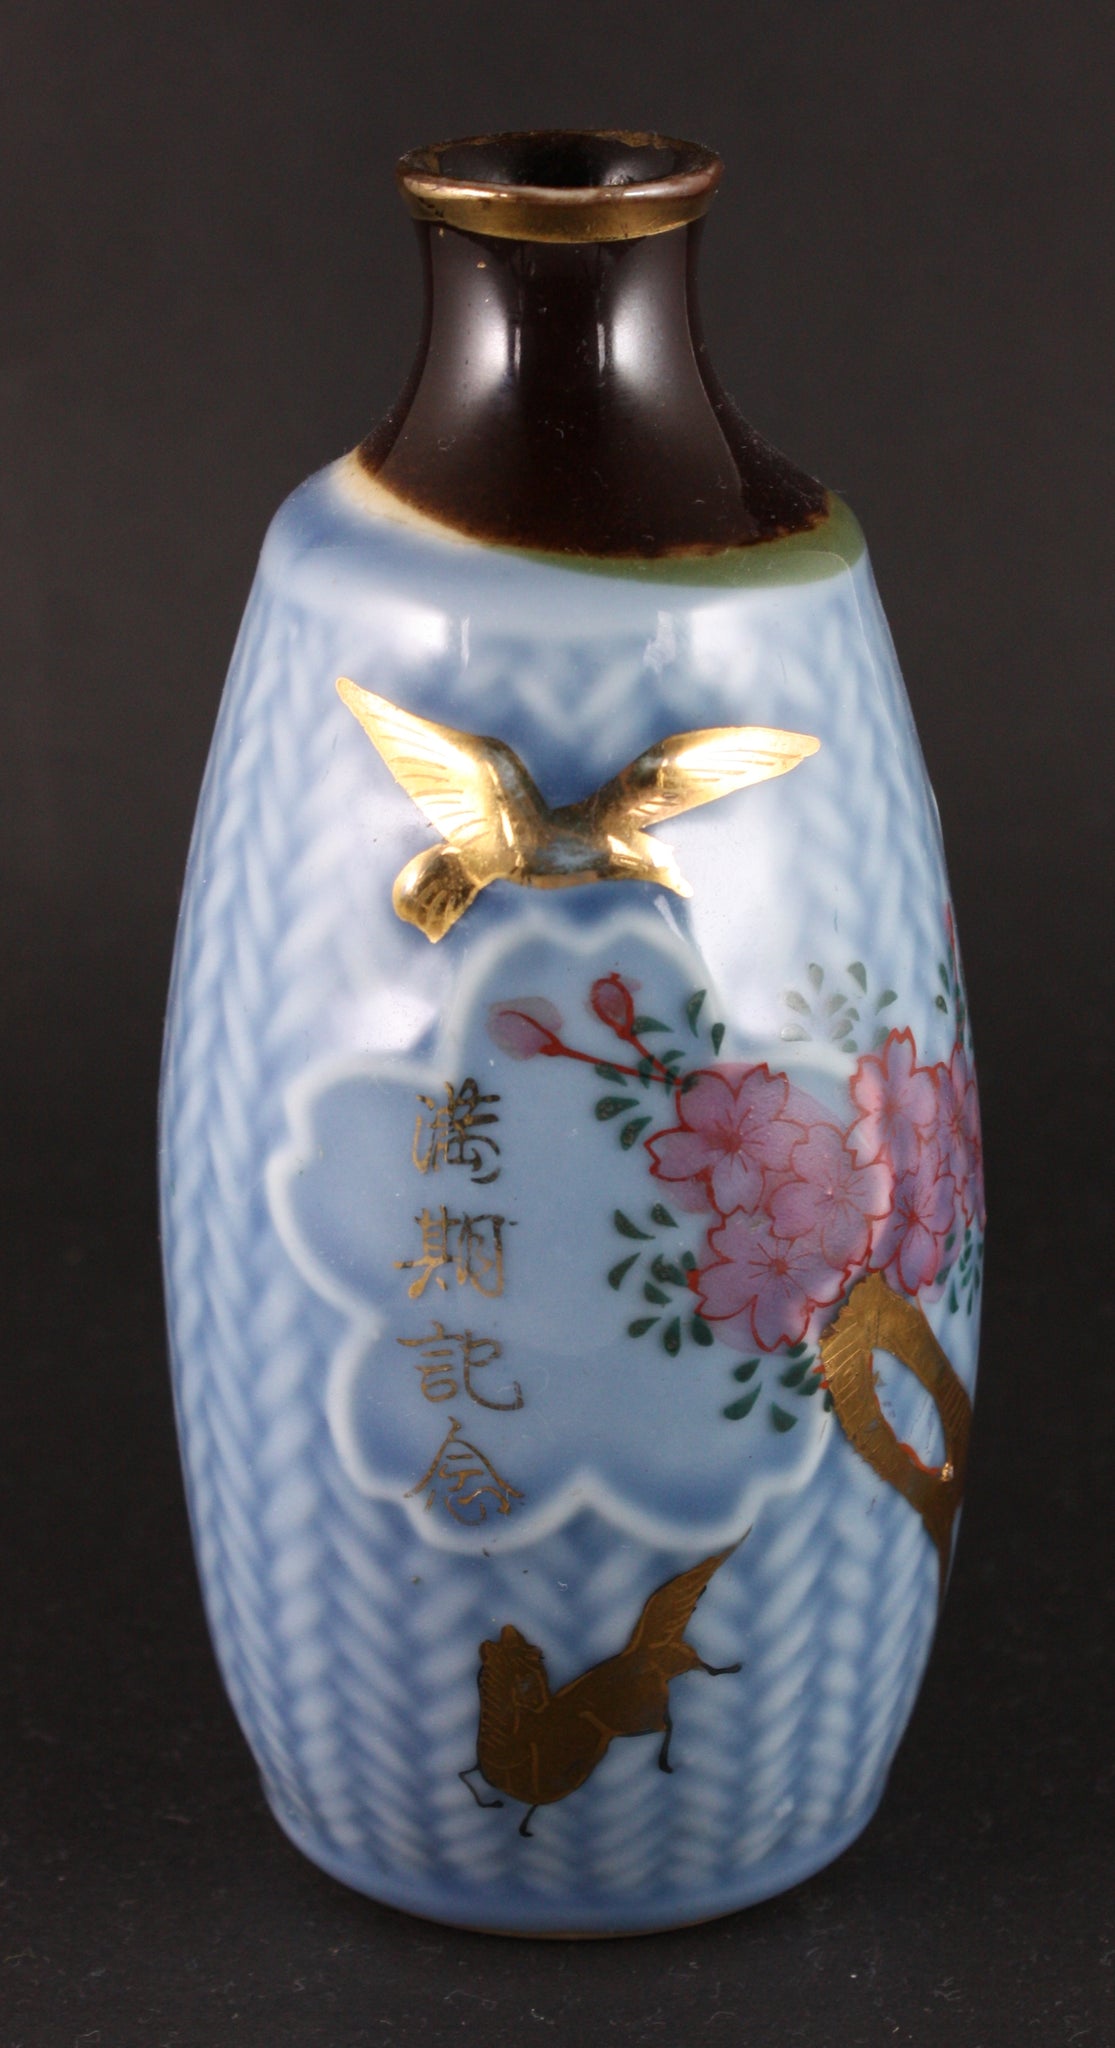 Antique Japanese Military Golden Kite Horse Army Sake Bottle